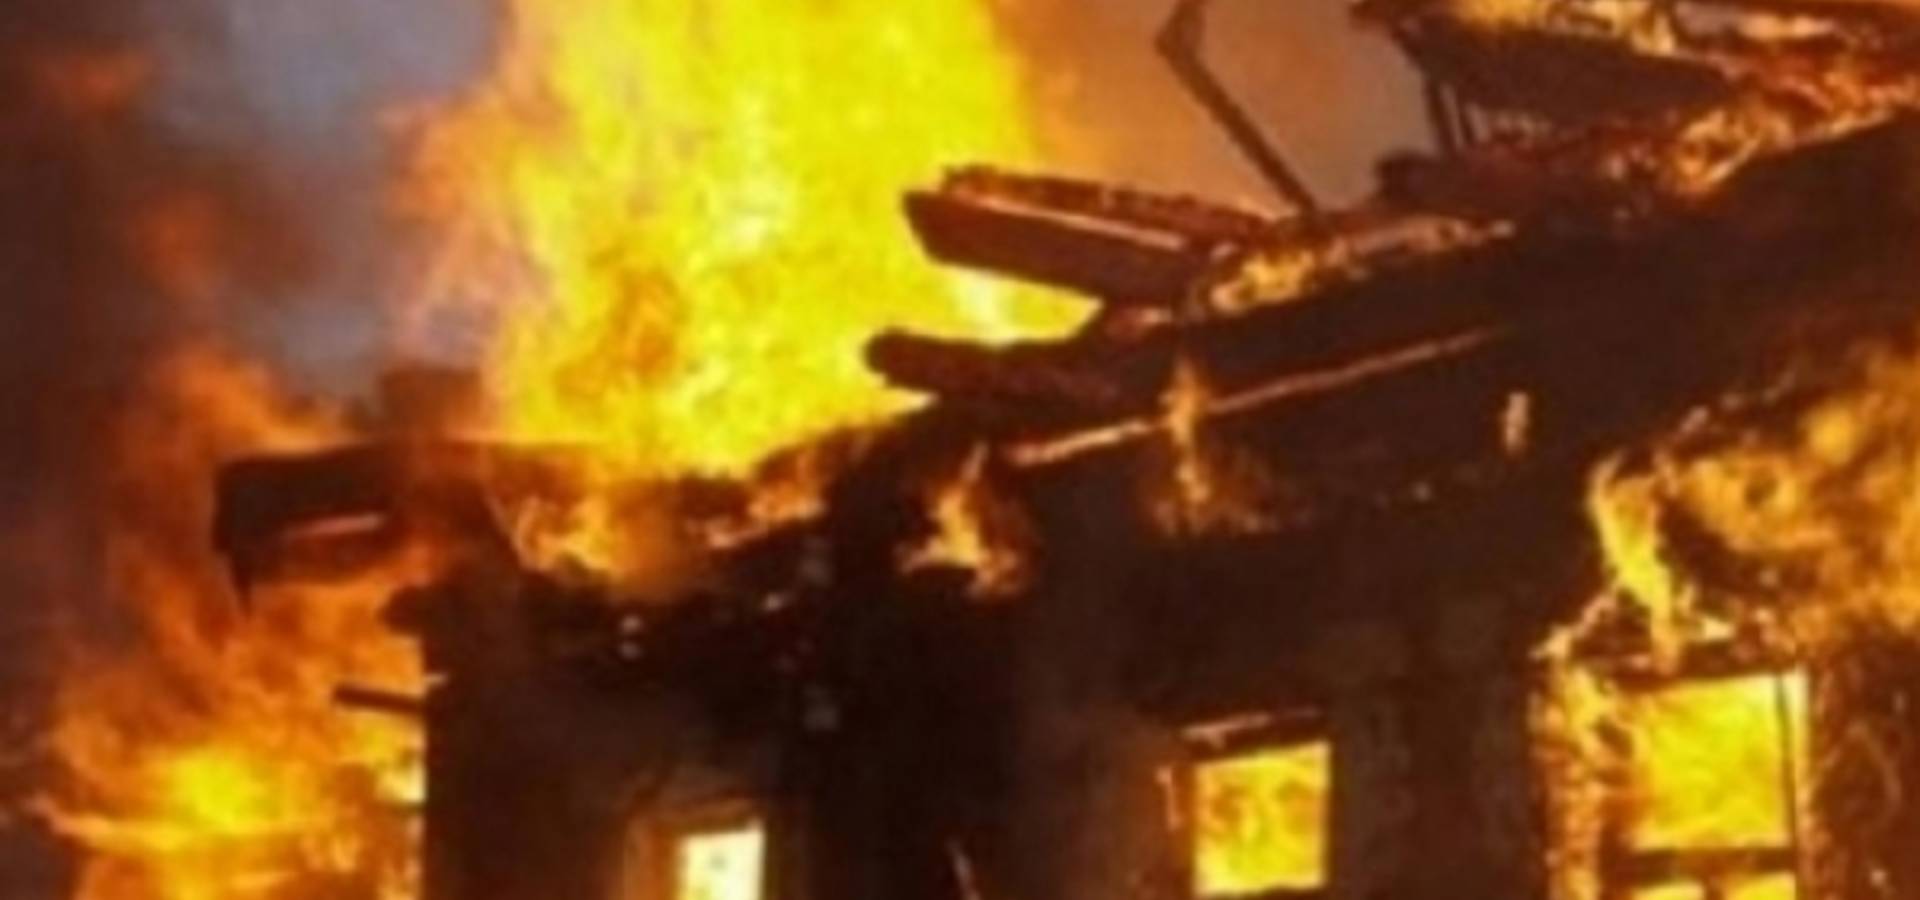 У Хмільницькому районі спалахнула пожежа, є постраждалі